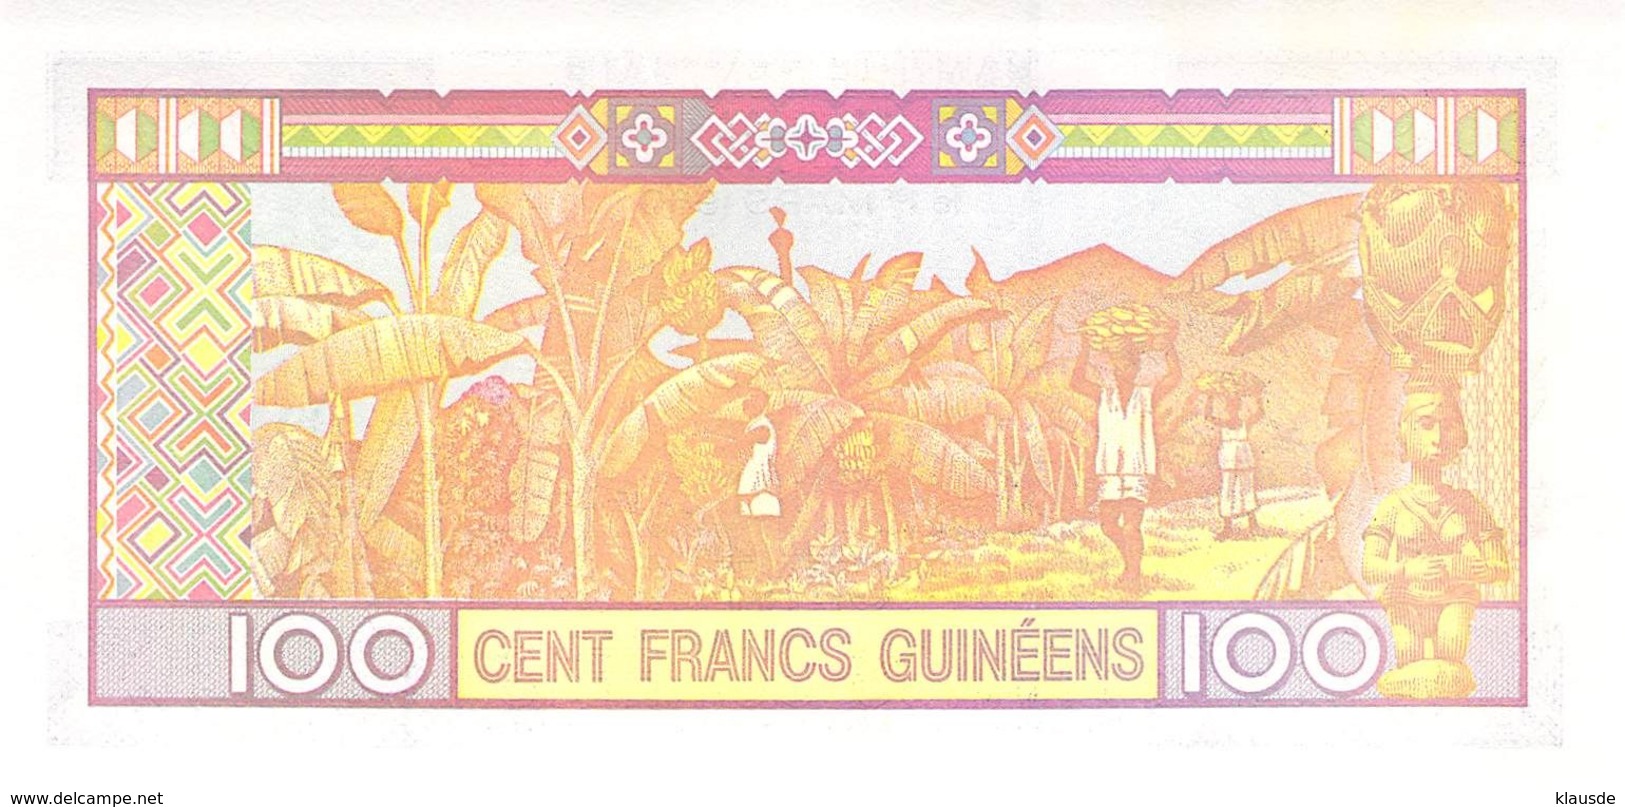 100 Cent Francs Guines 1960 UNC - Guinea